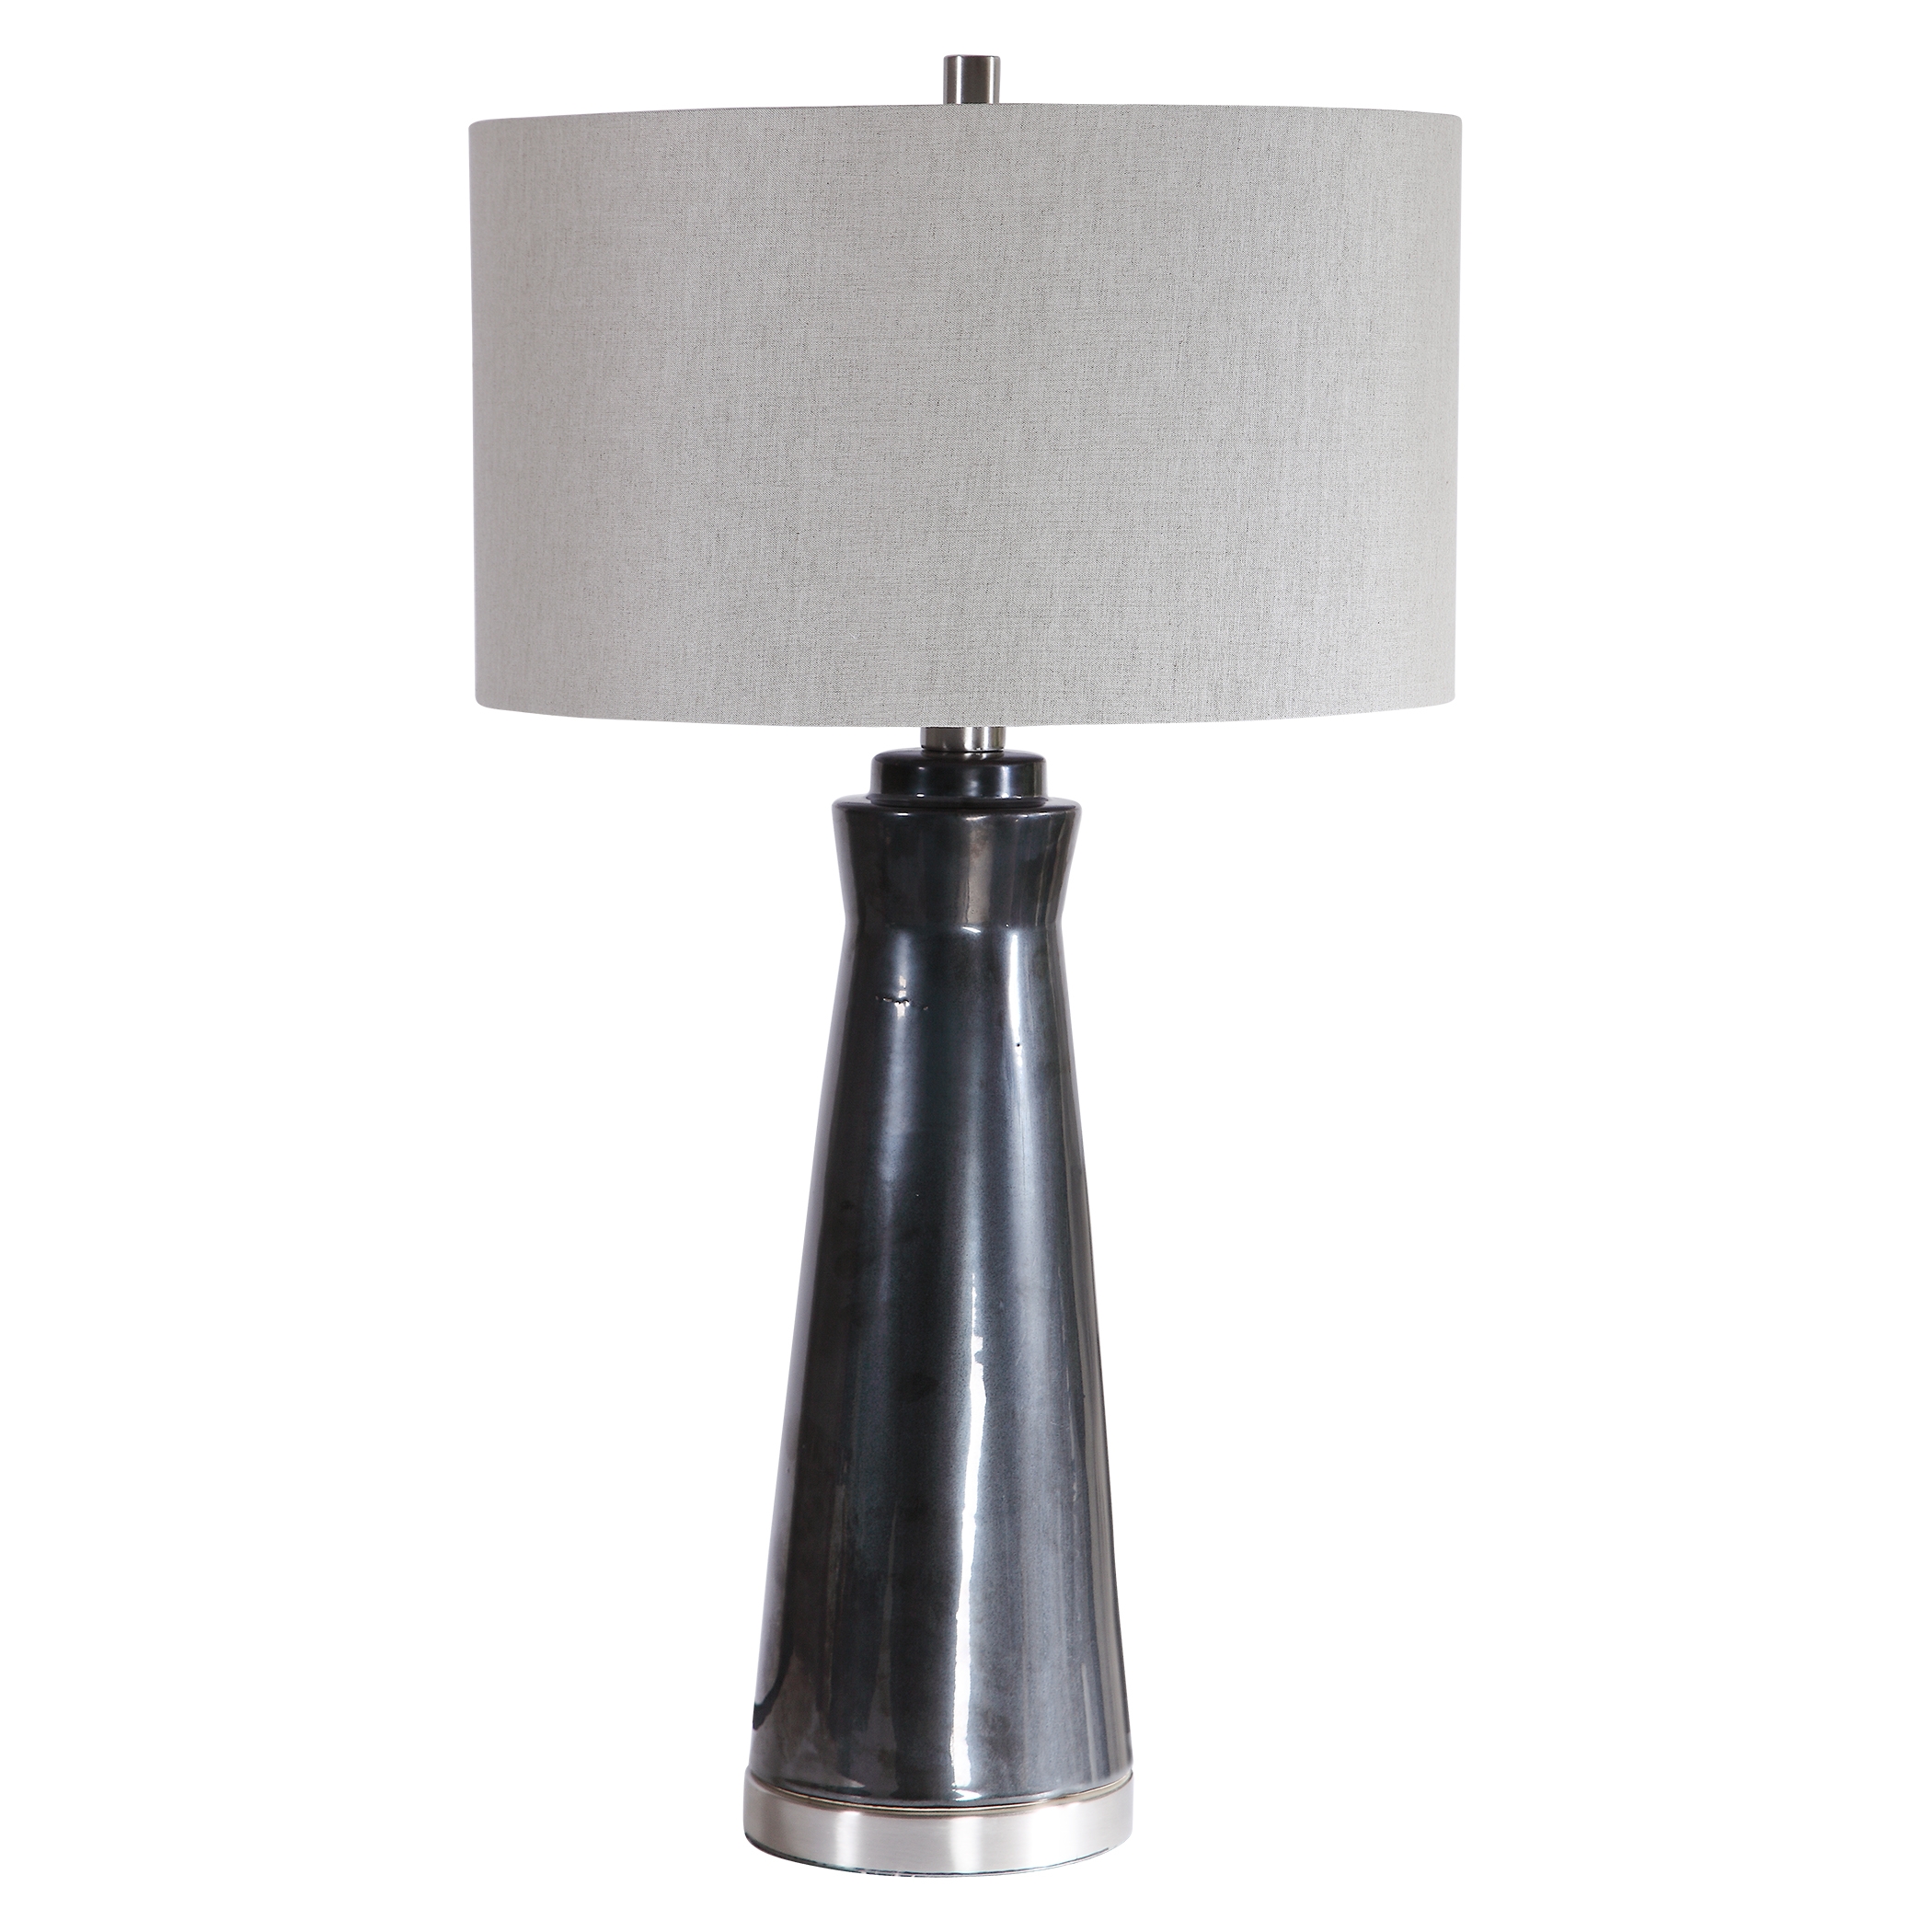 Arlan Dark Charcoal Table Lamp - Image 2